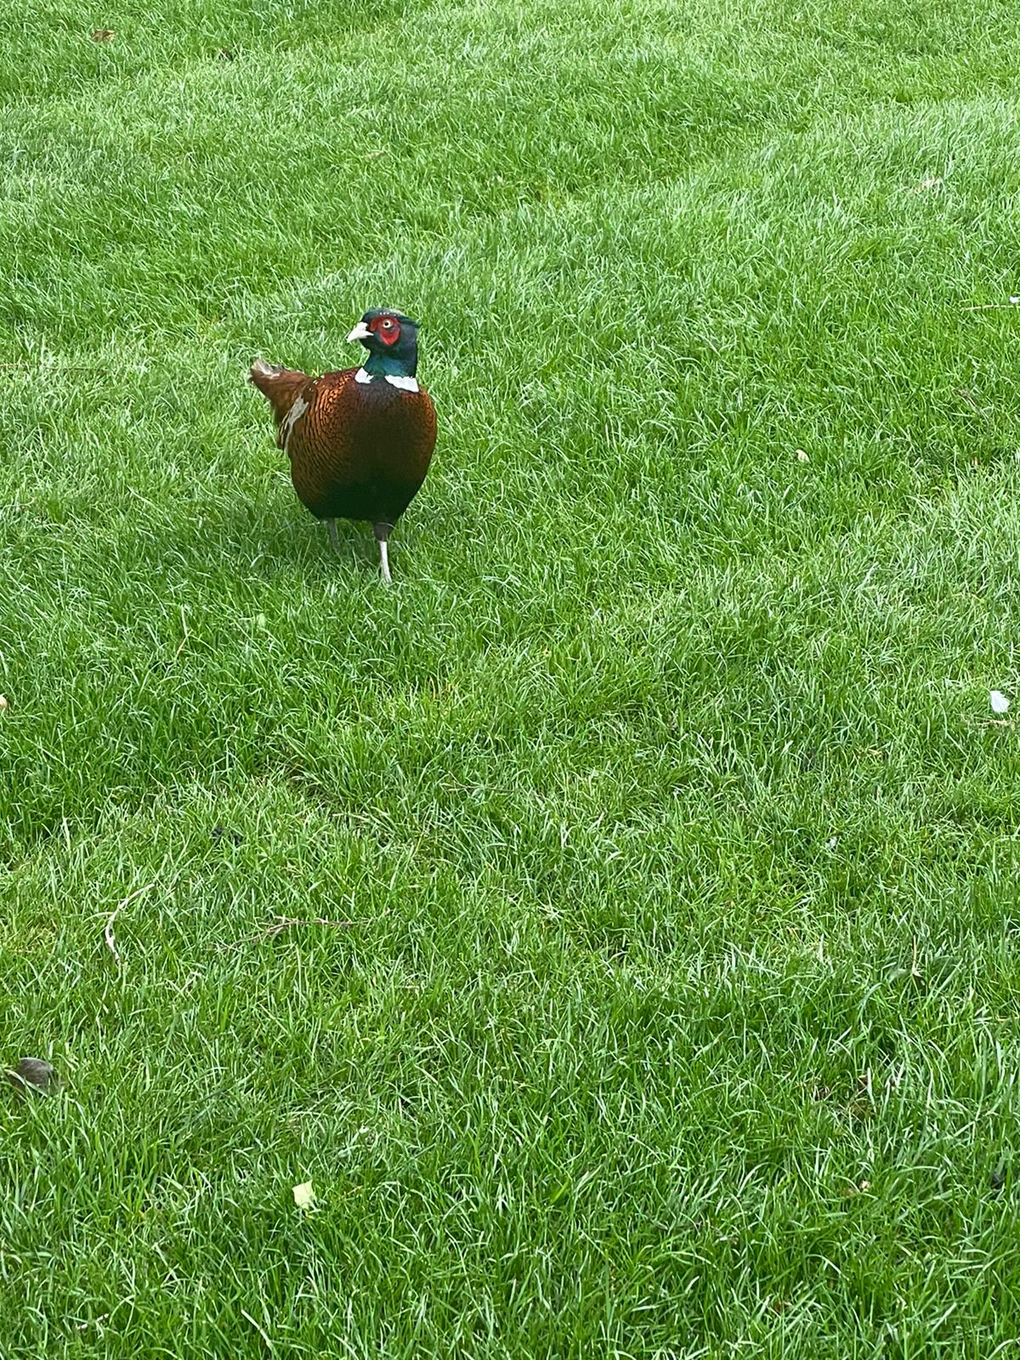 Pheasant on a lawn